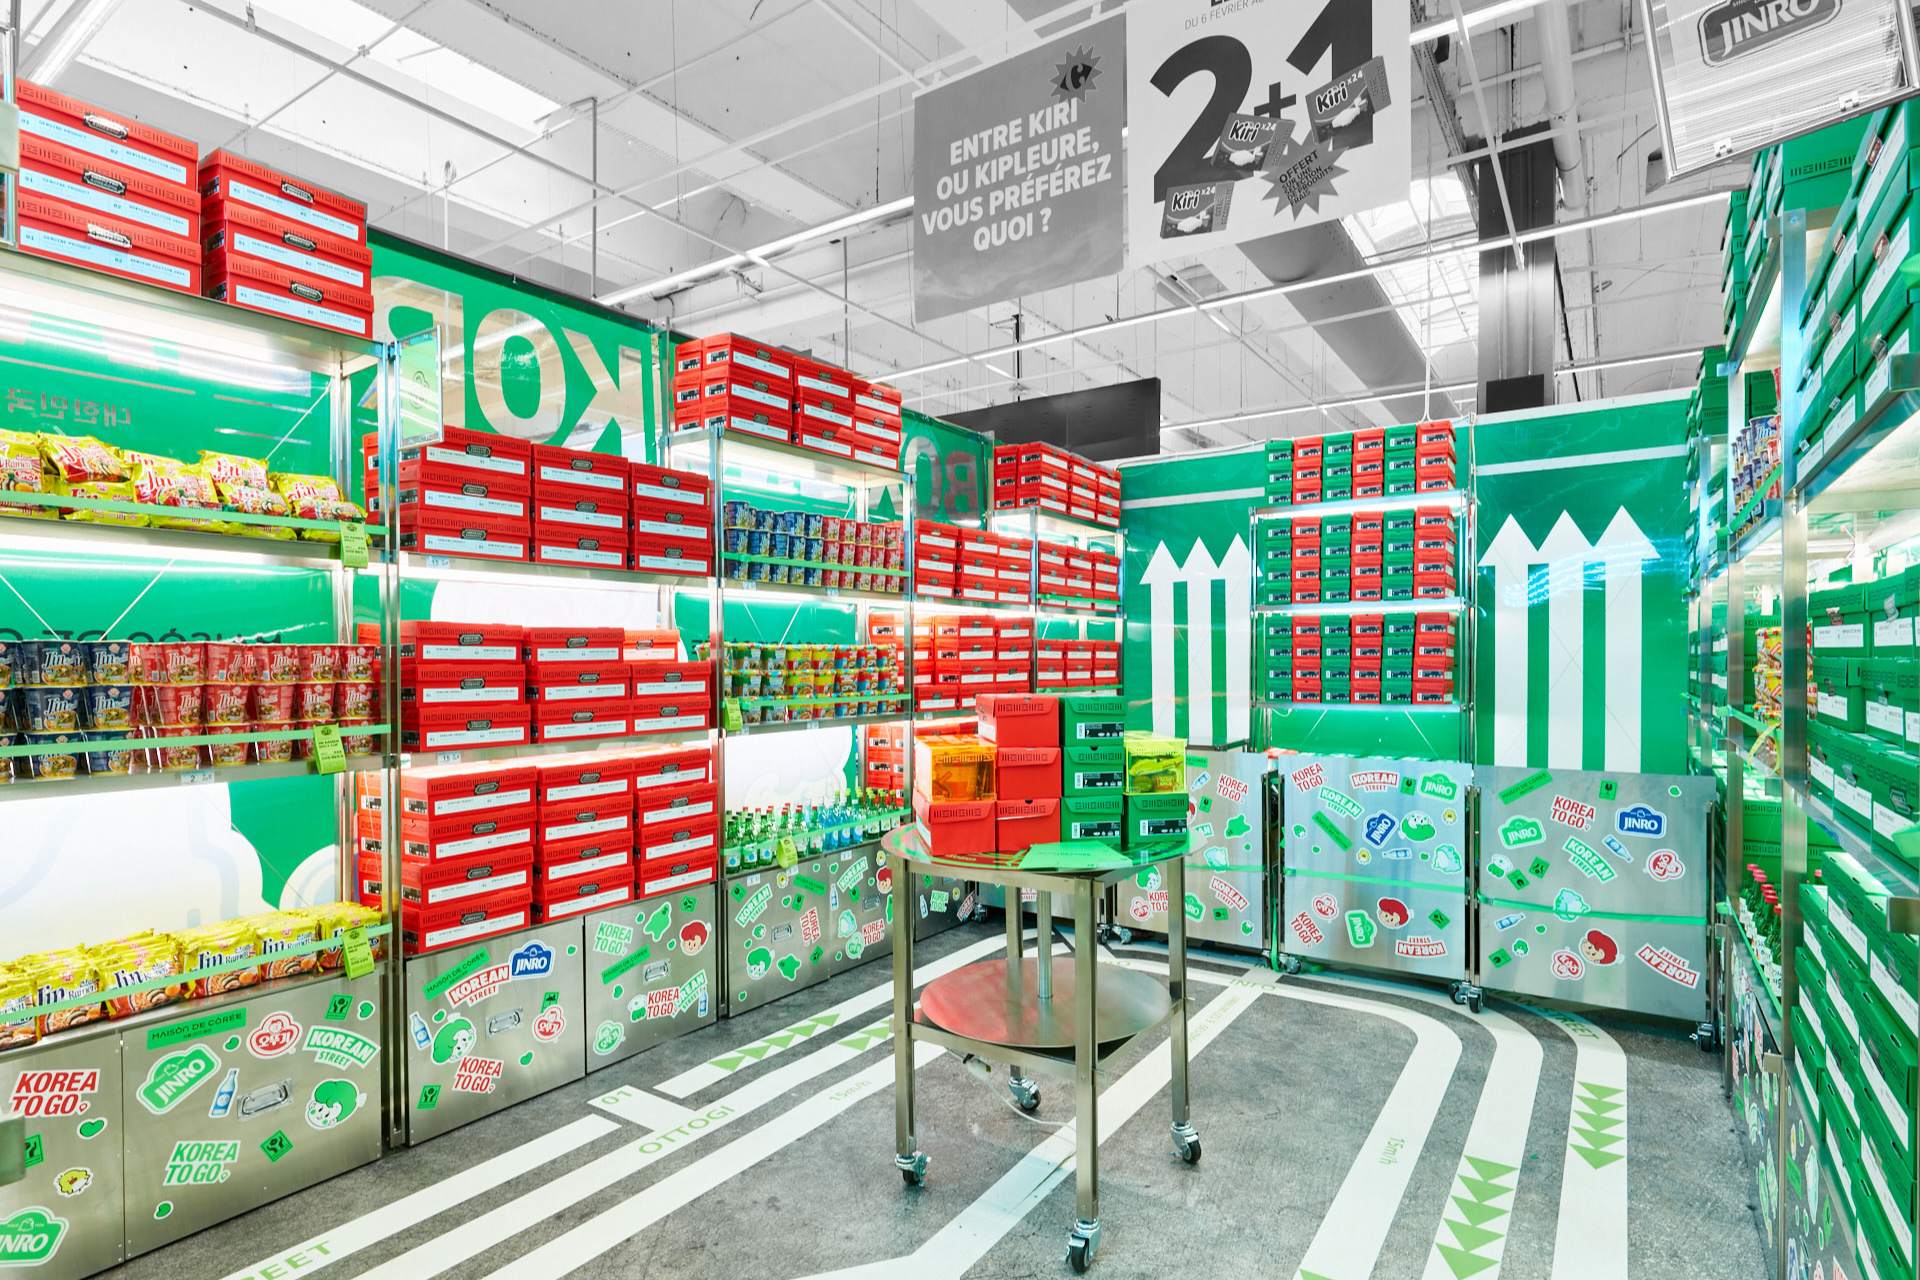 Vue de l'intérieur du pop up store UNBOXING KOREA implanté dans à Carrefour